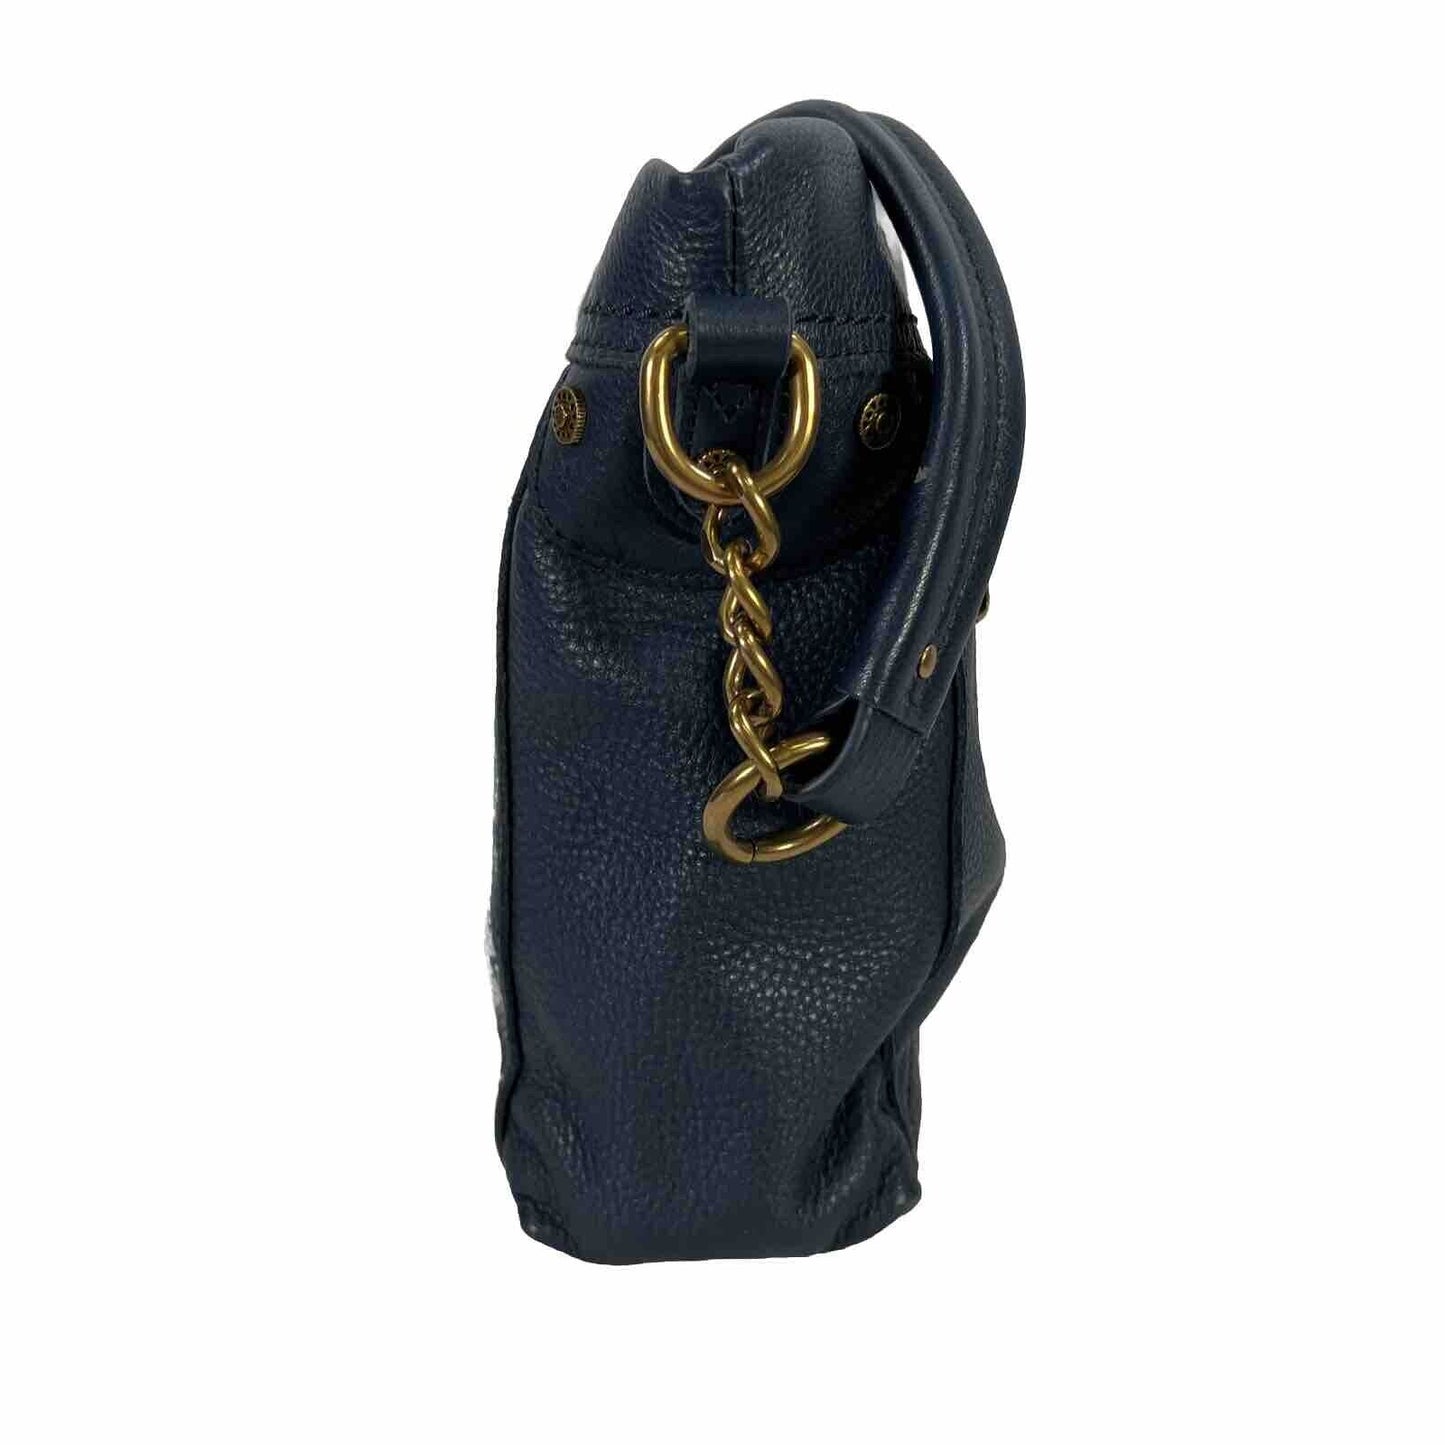 The Sak Collective Navy Blue Leather Tahoe Shoulder Bag Purse